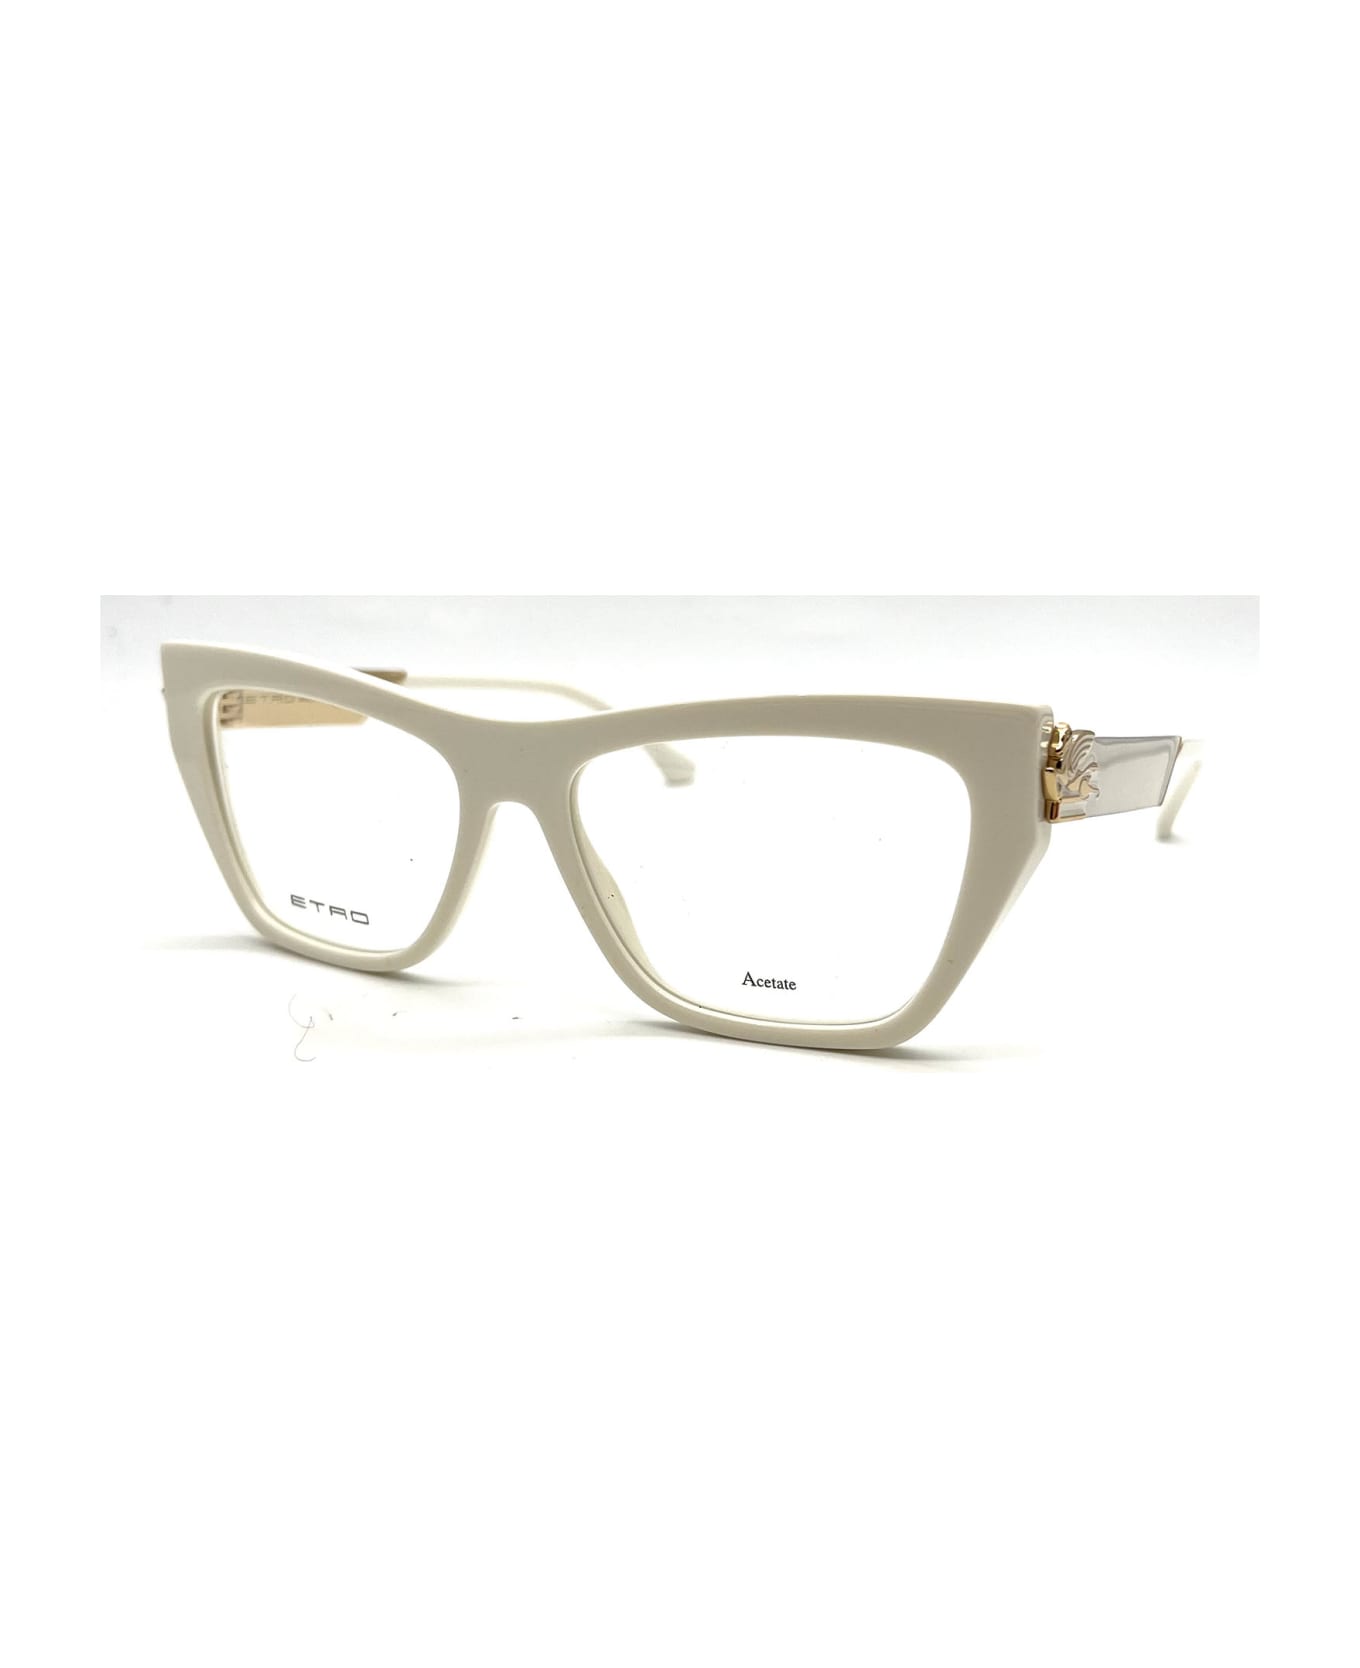 Etro 0029 Eyewear - Ivory